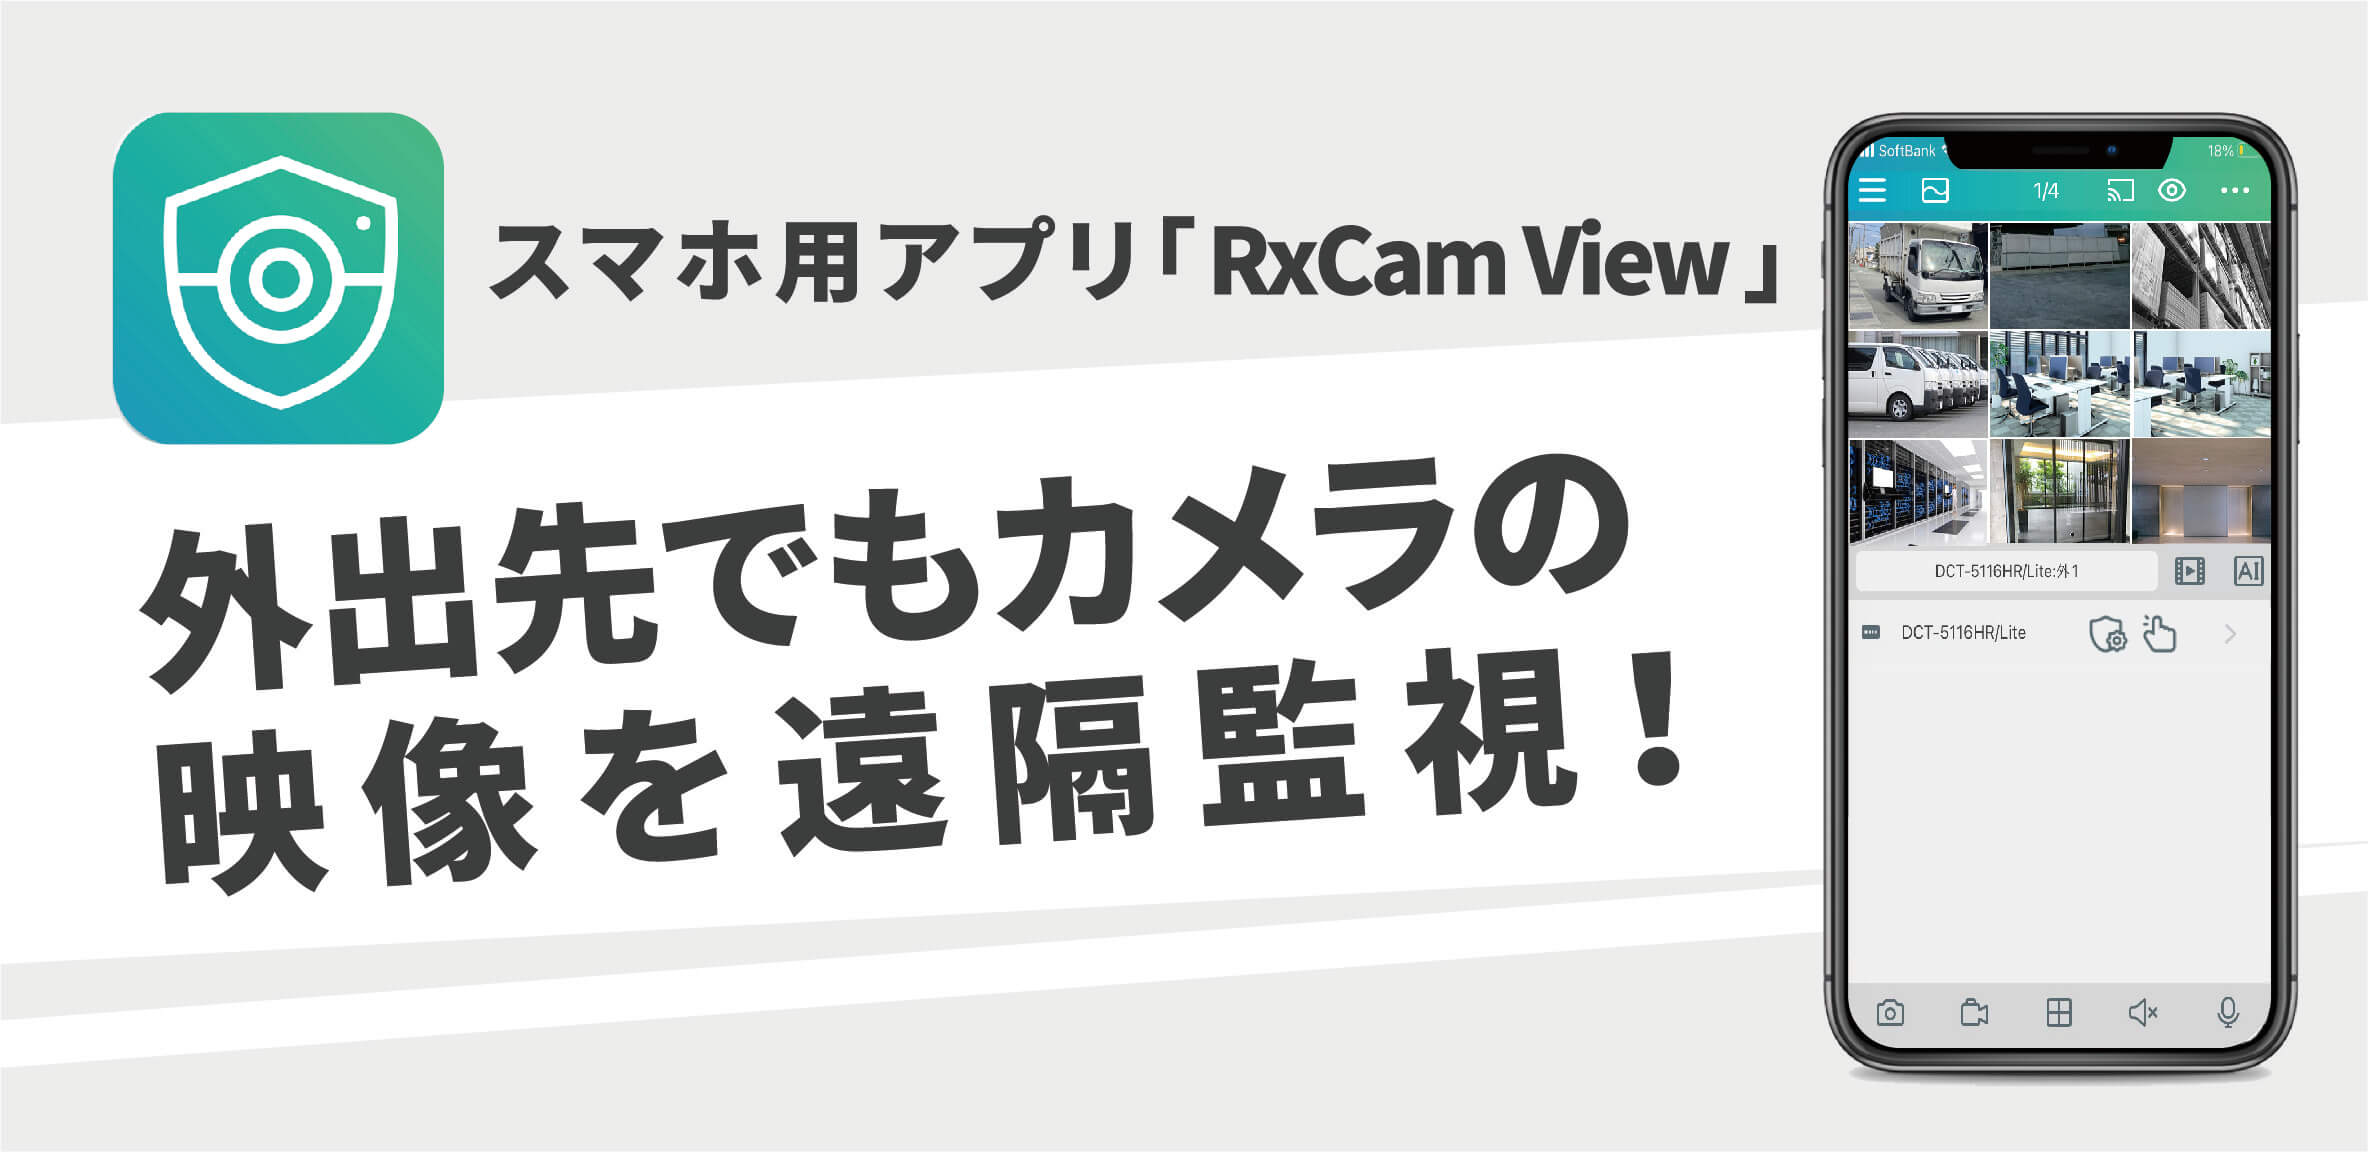 スマホ用アプリ 「 RxCam View 」